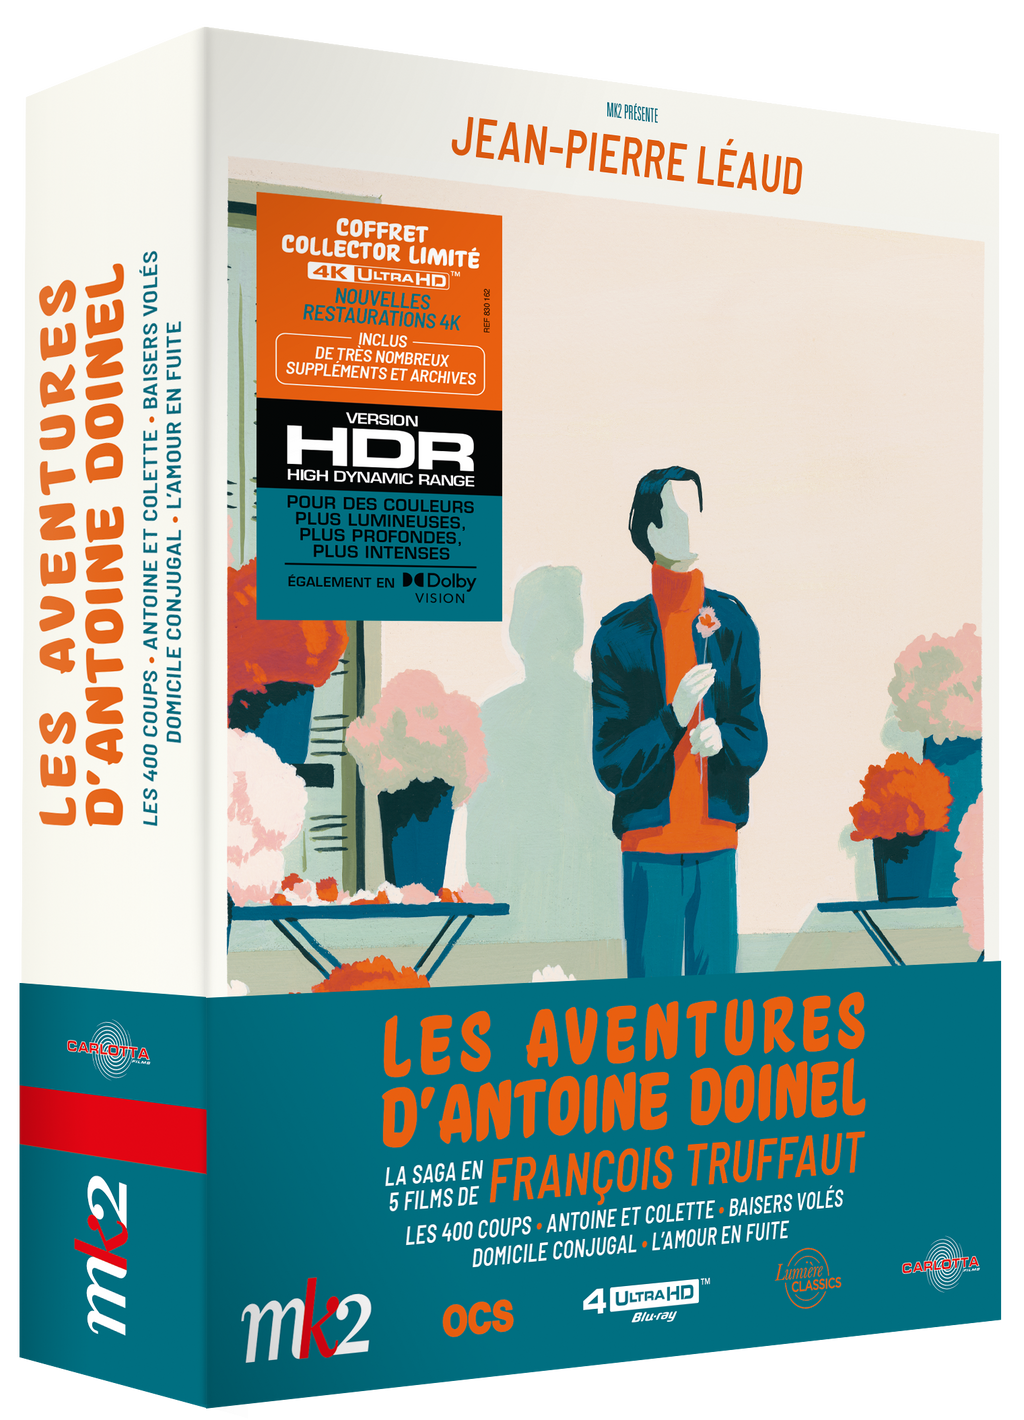 The Adventures of Antoine Doinel box set